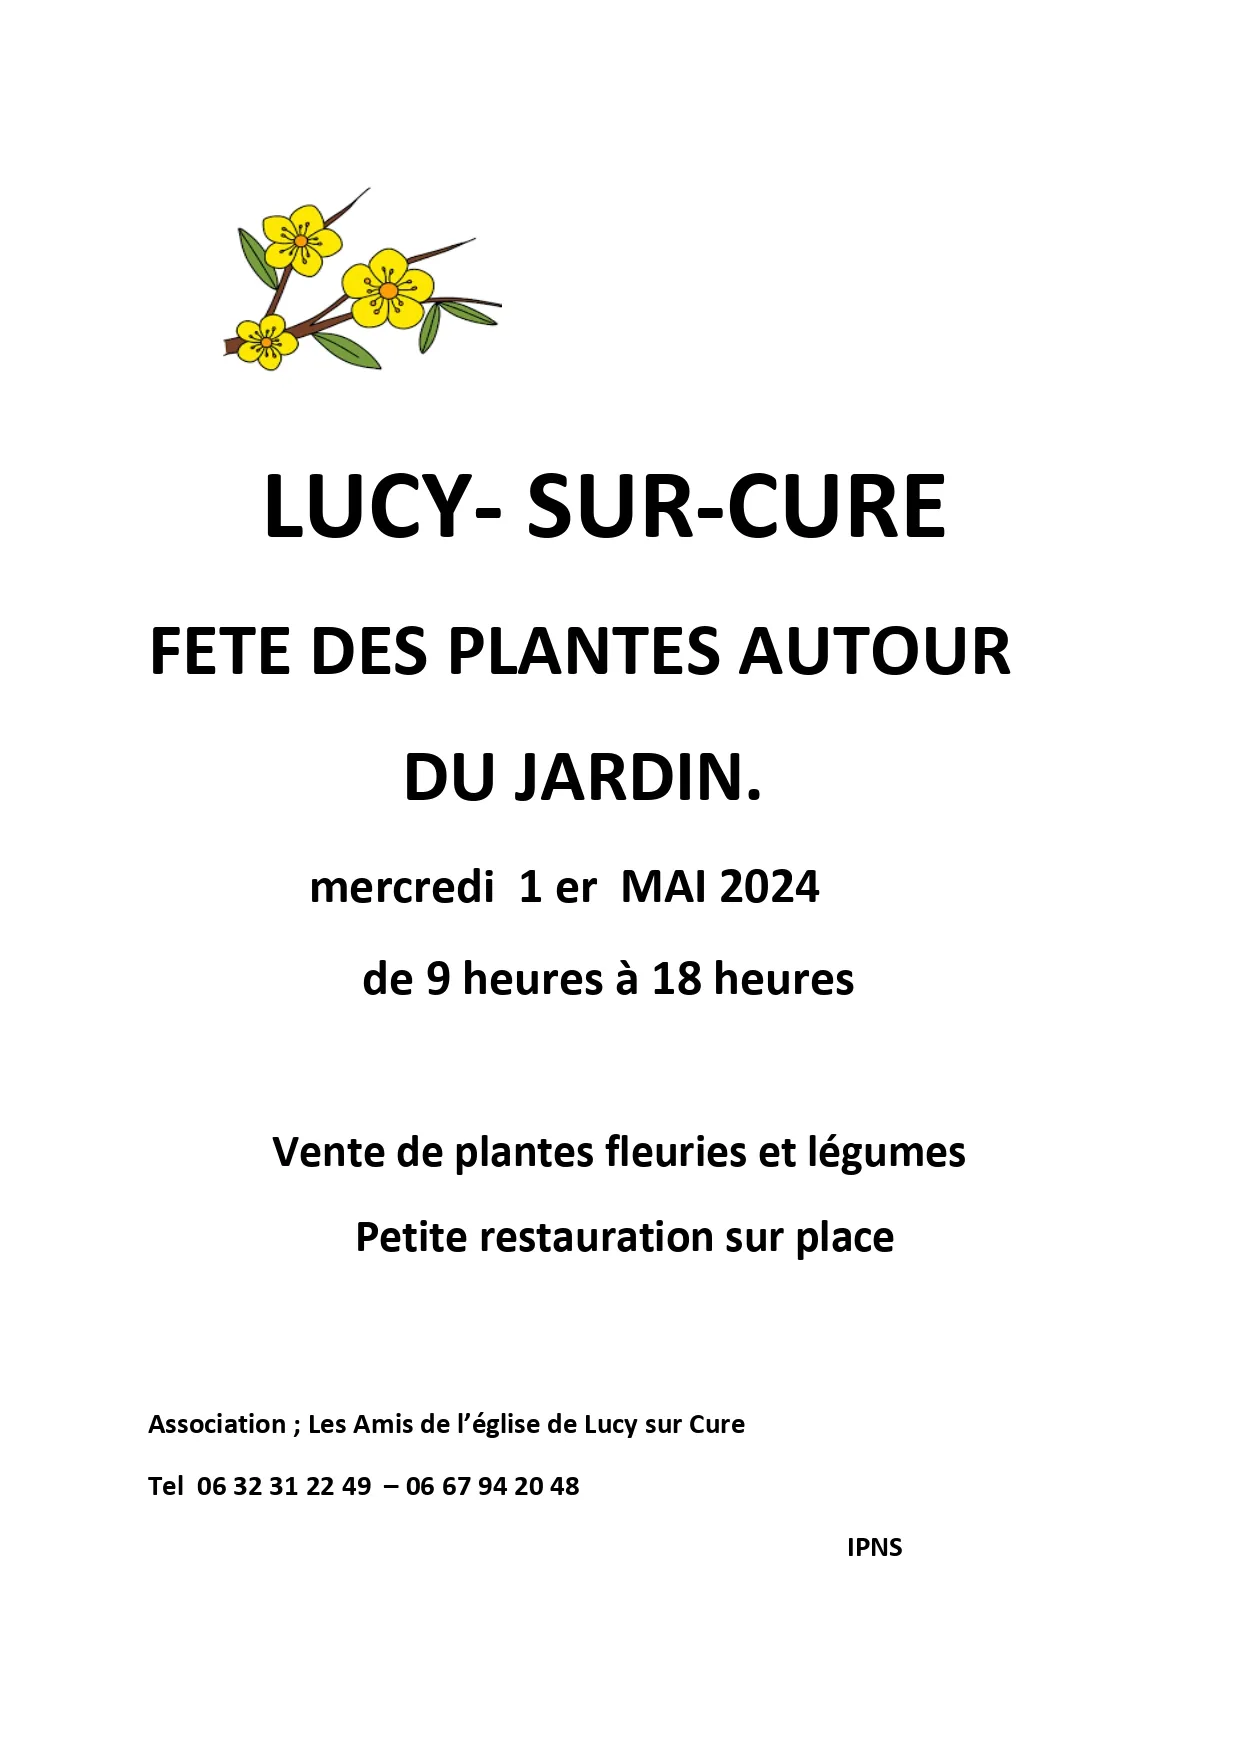 Image qui illustre: Fête des plantes autour du jardin à Lucy-sur-Cure - 0